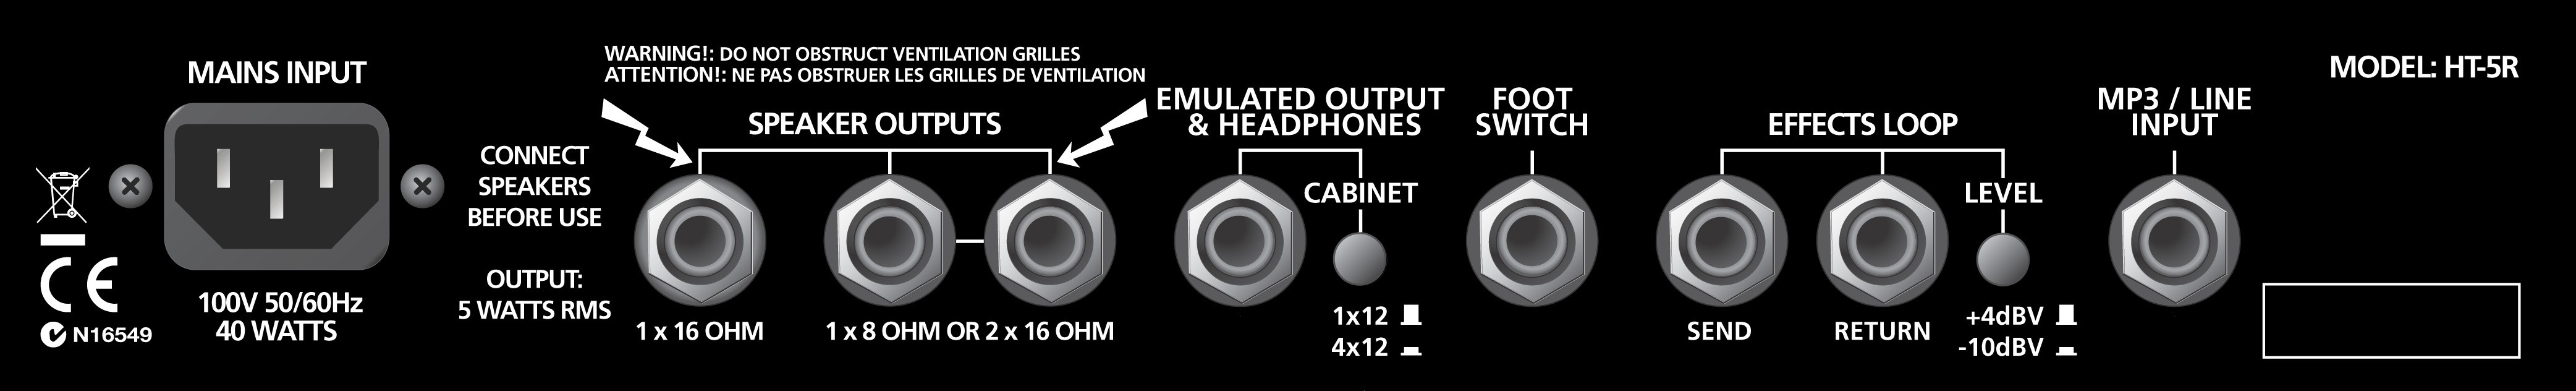 Blackstar Ht-5r 5w 1x12 Lampes Bronco Tan 2016 - Combo amplificador para guitarra eléctrica - Variation 2